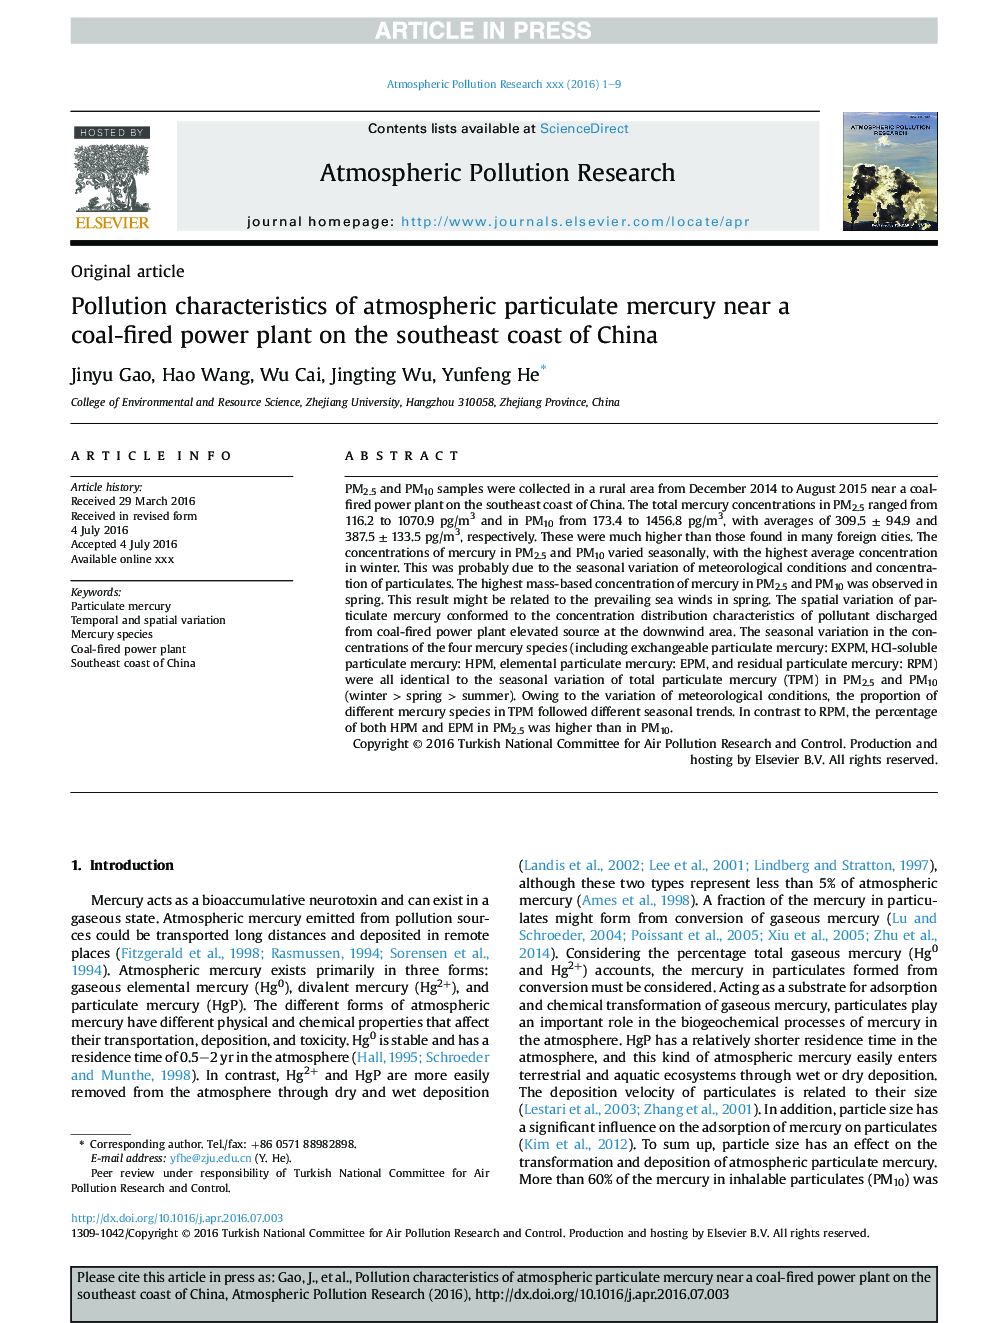 خصوصیات آلودگی جیوه ذرات جوی در نزدیکی یک نیروگاه با زغال سنگ در ساحل جنوب شرقی چین 